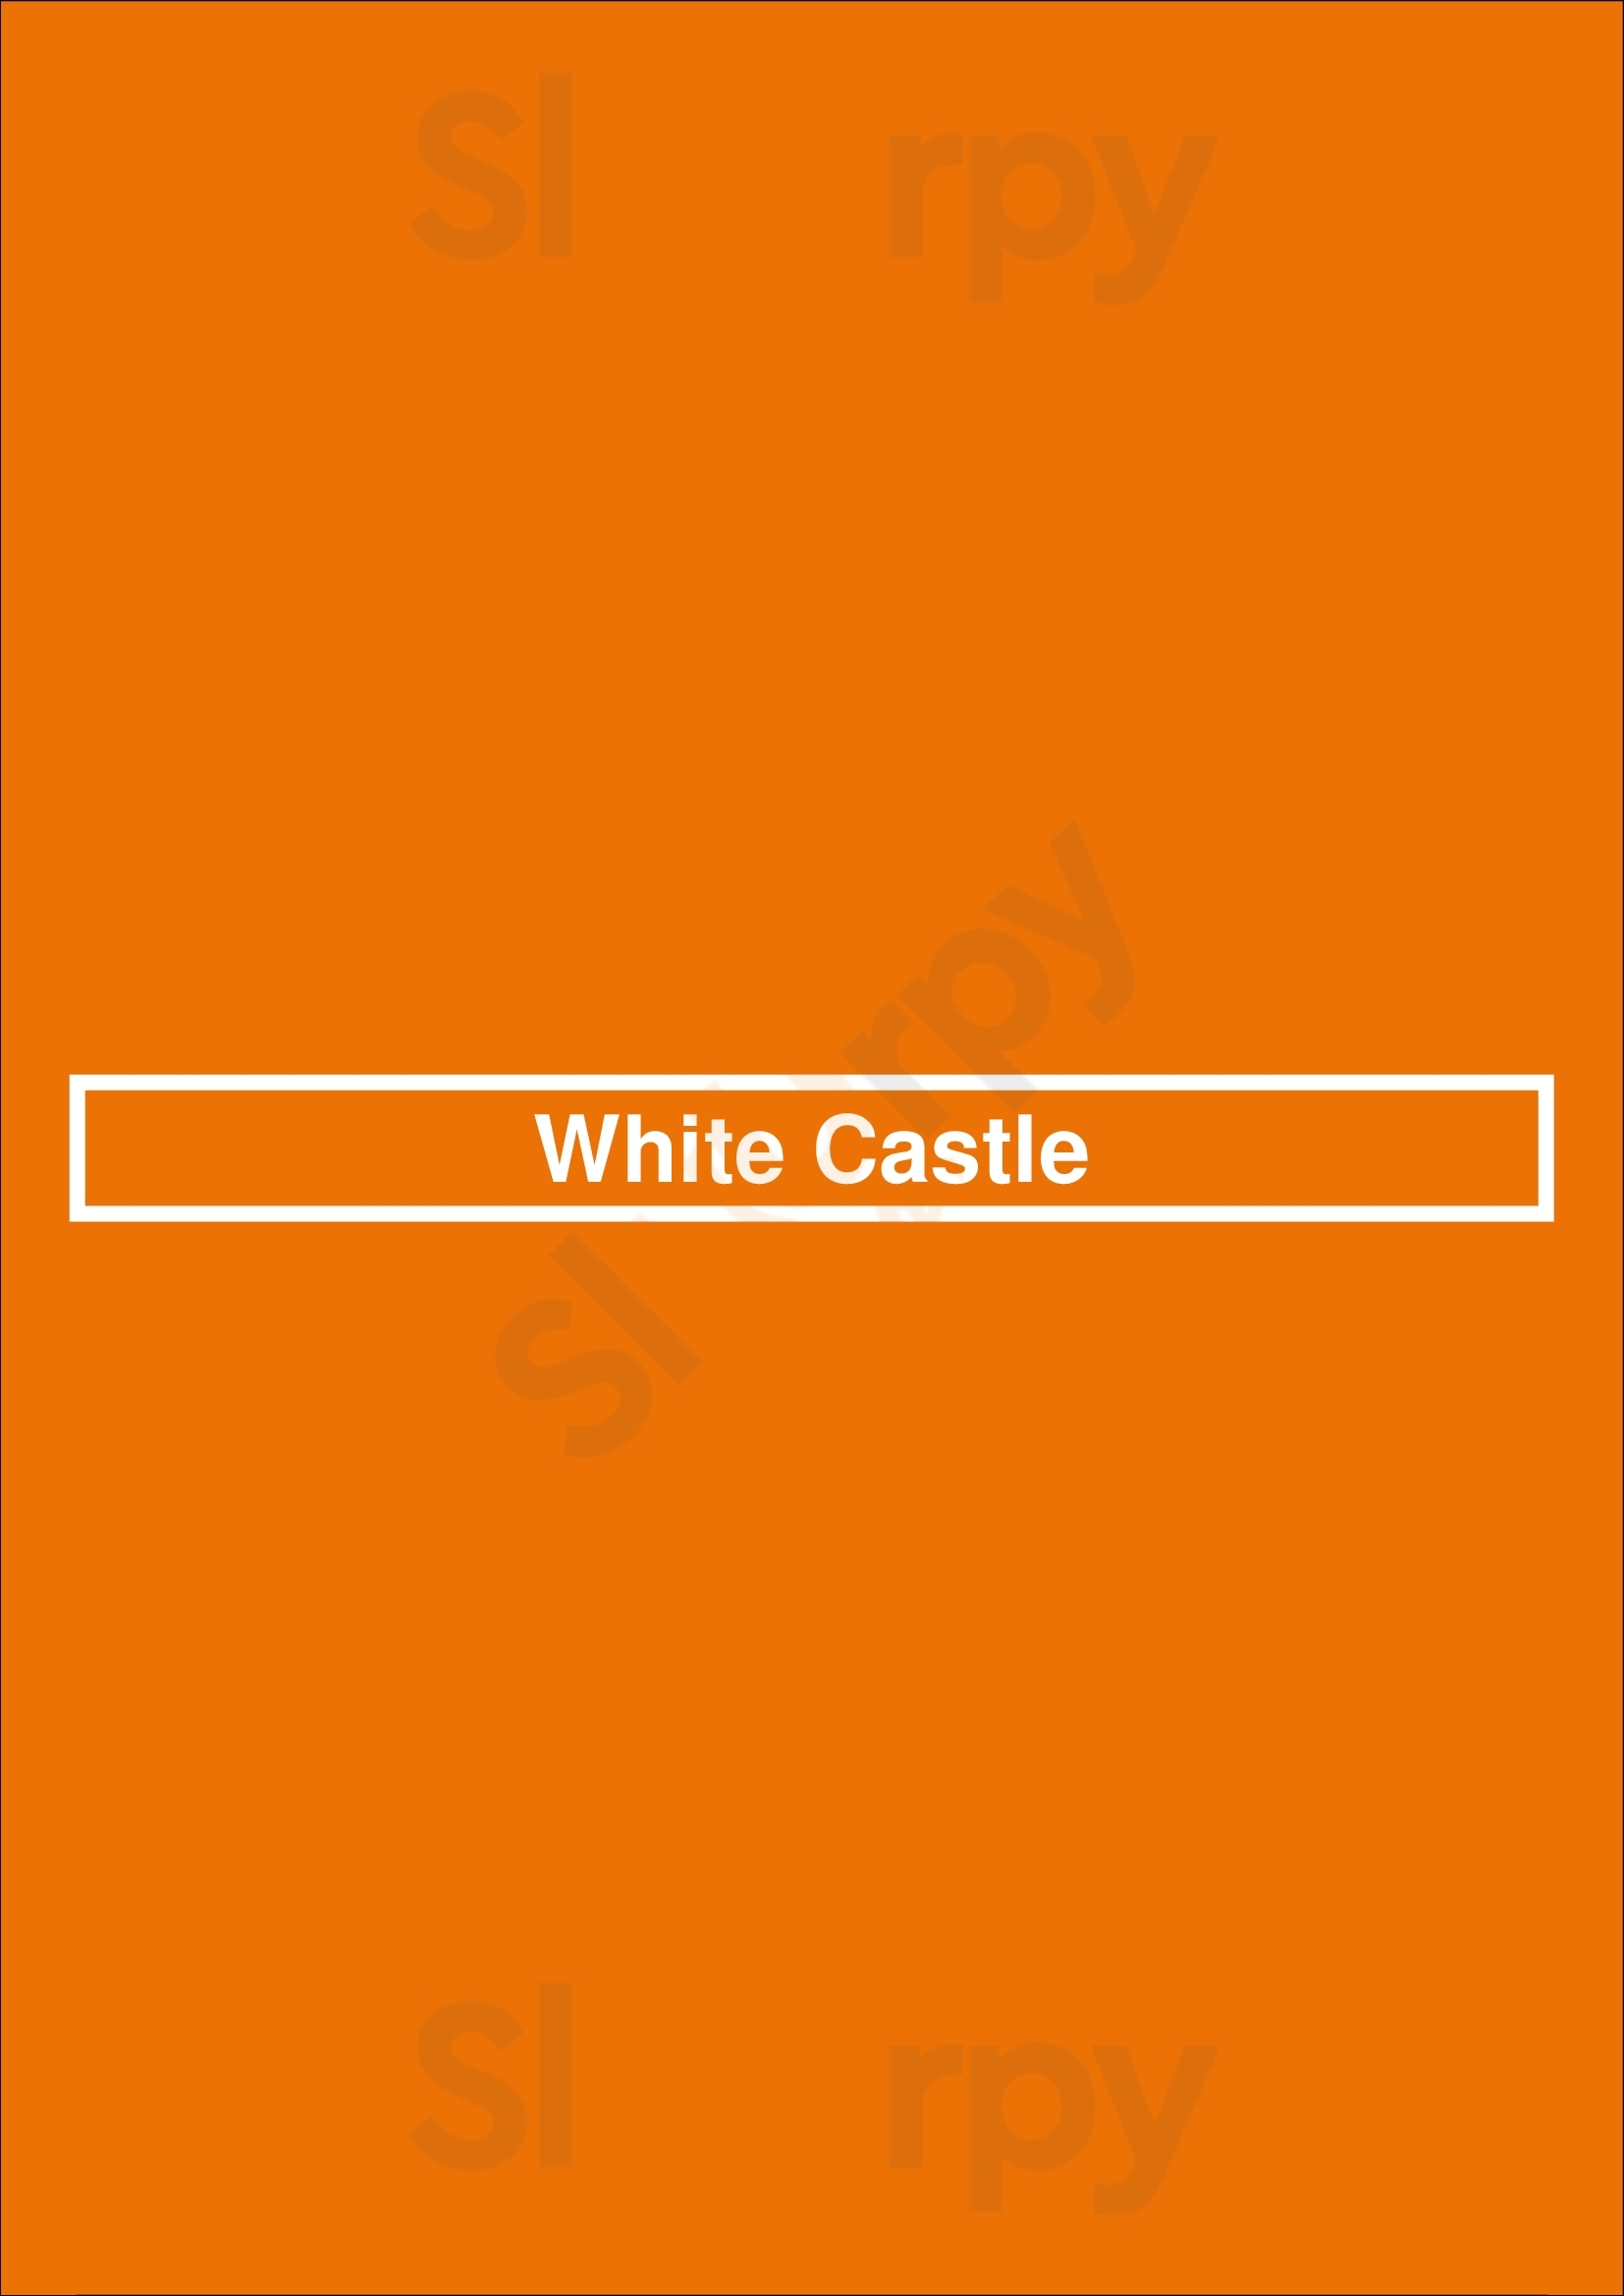 White Castle Columbia Menu - 1